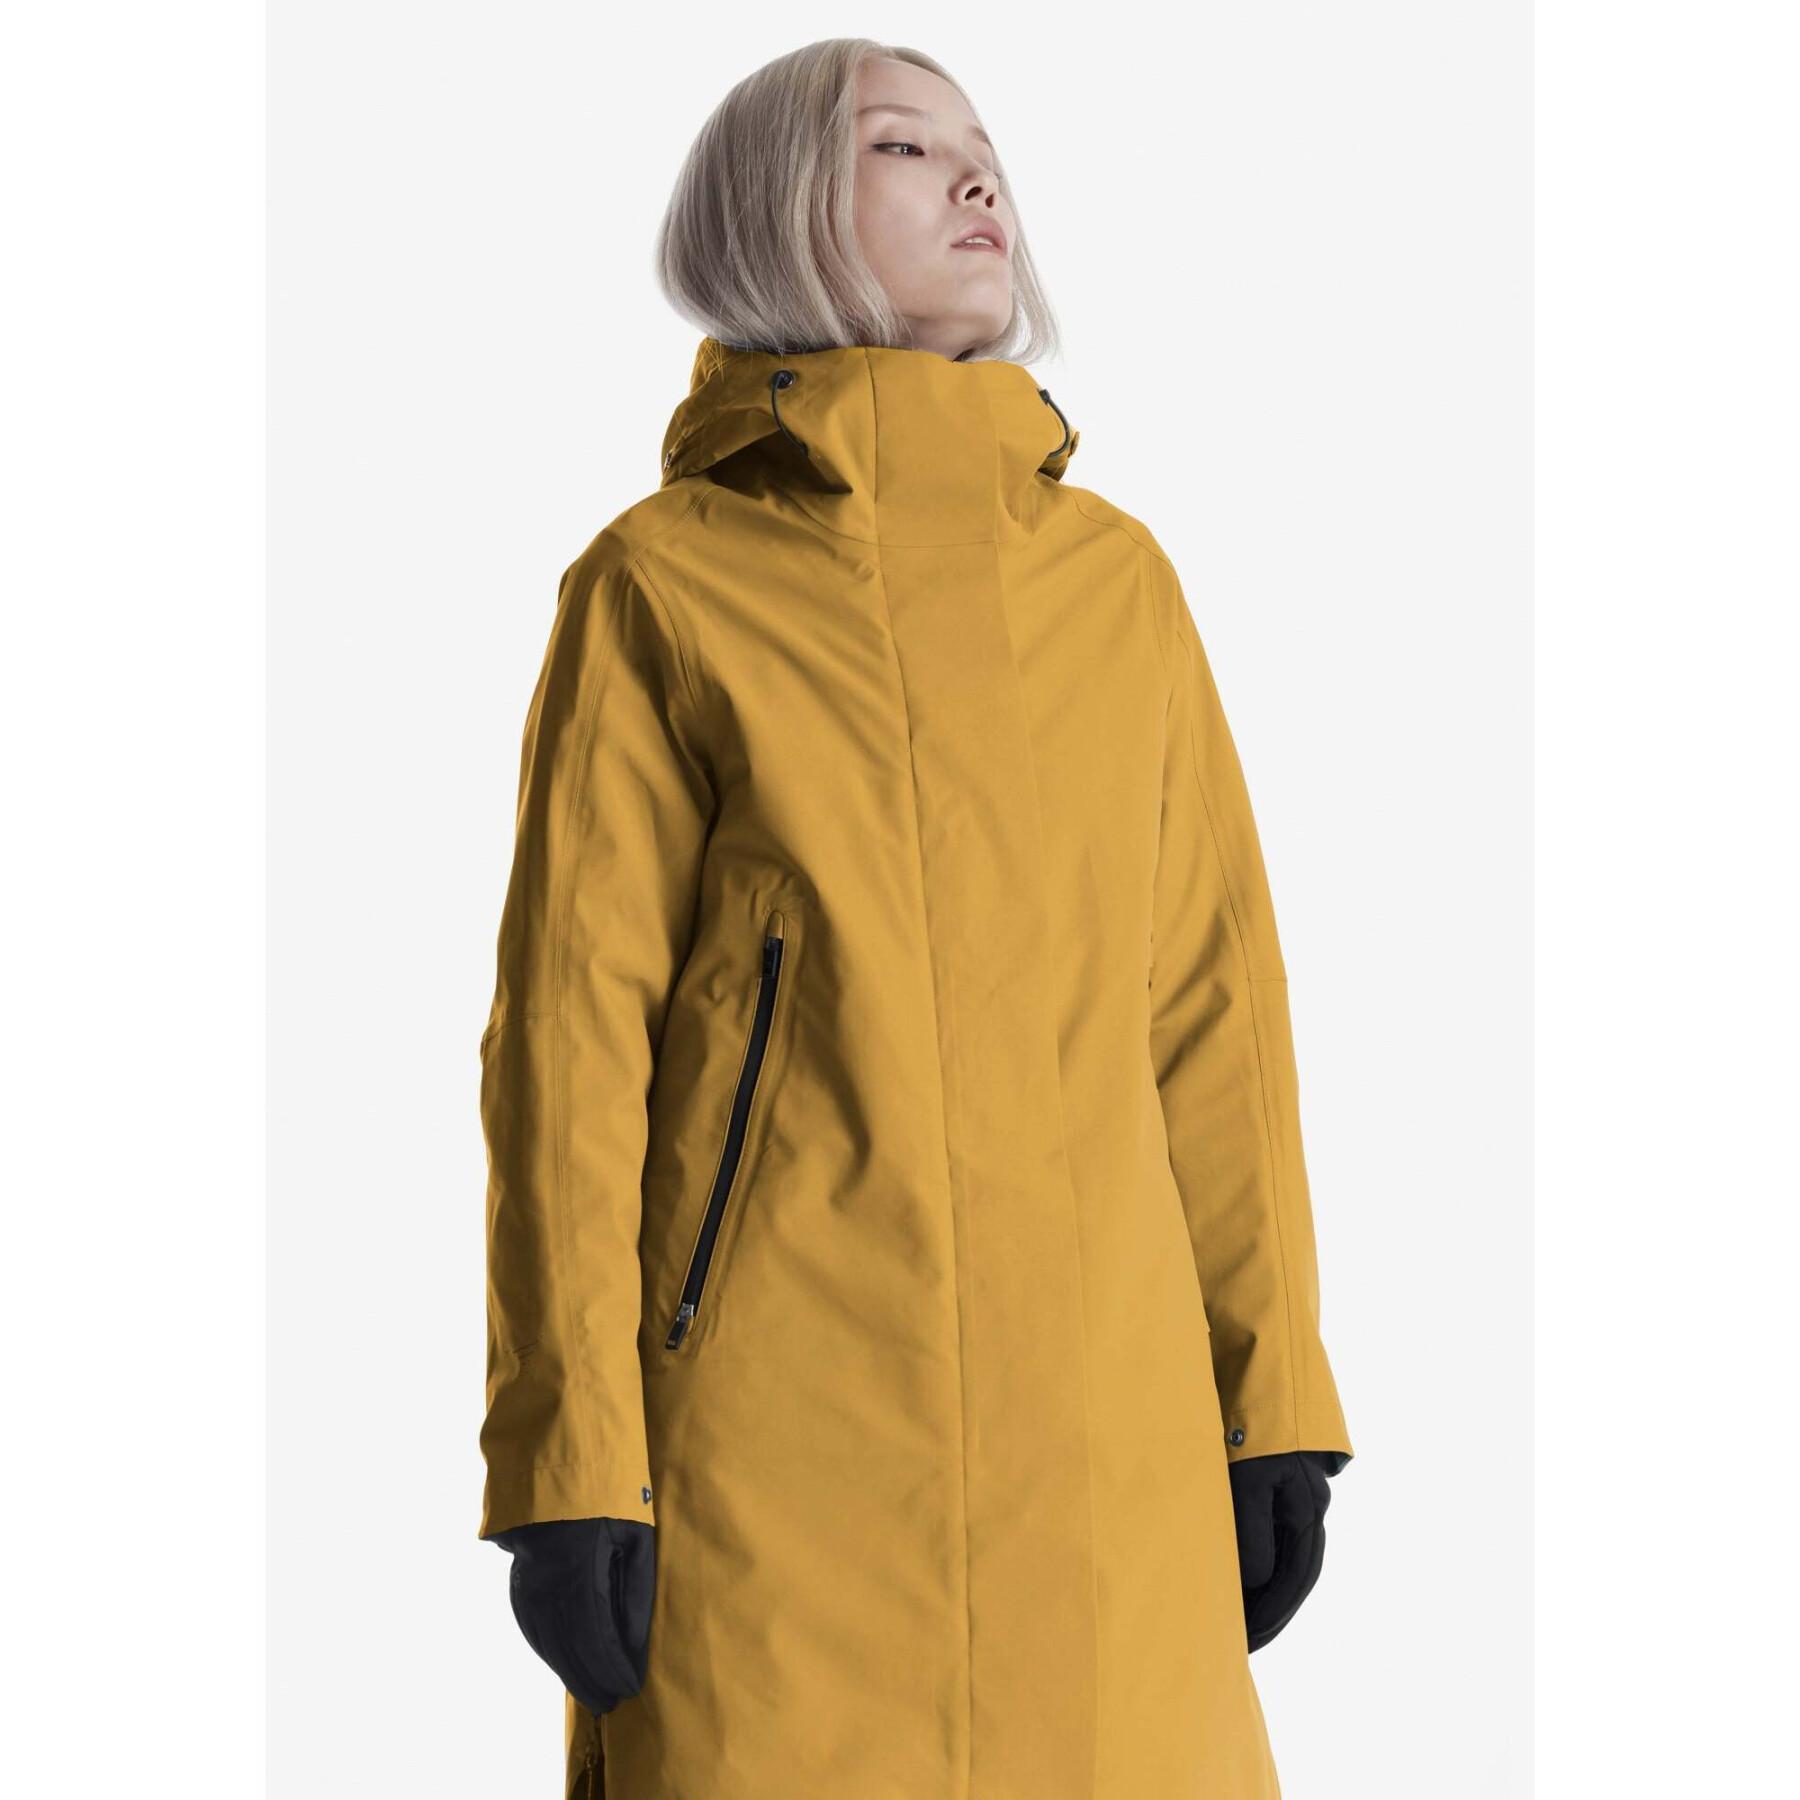 Women's waterproof jacket Krakatau Planck